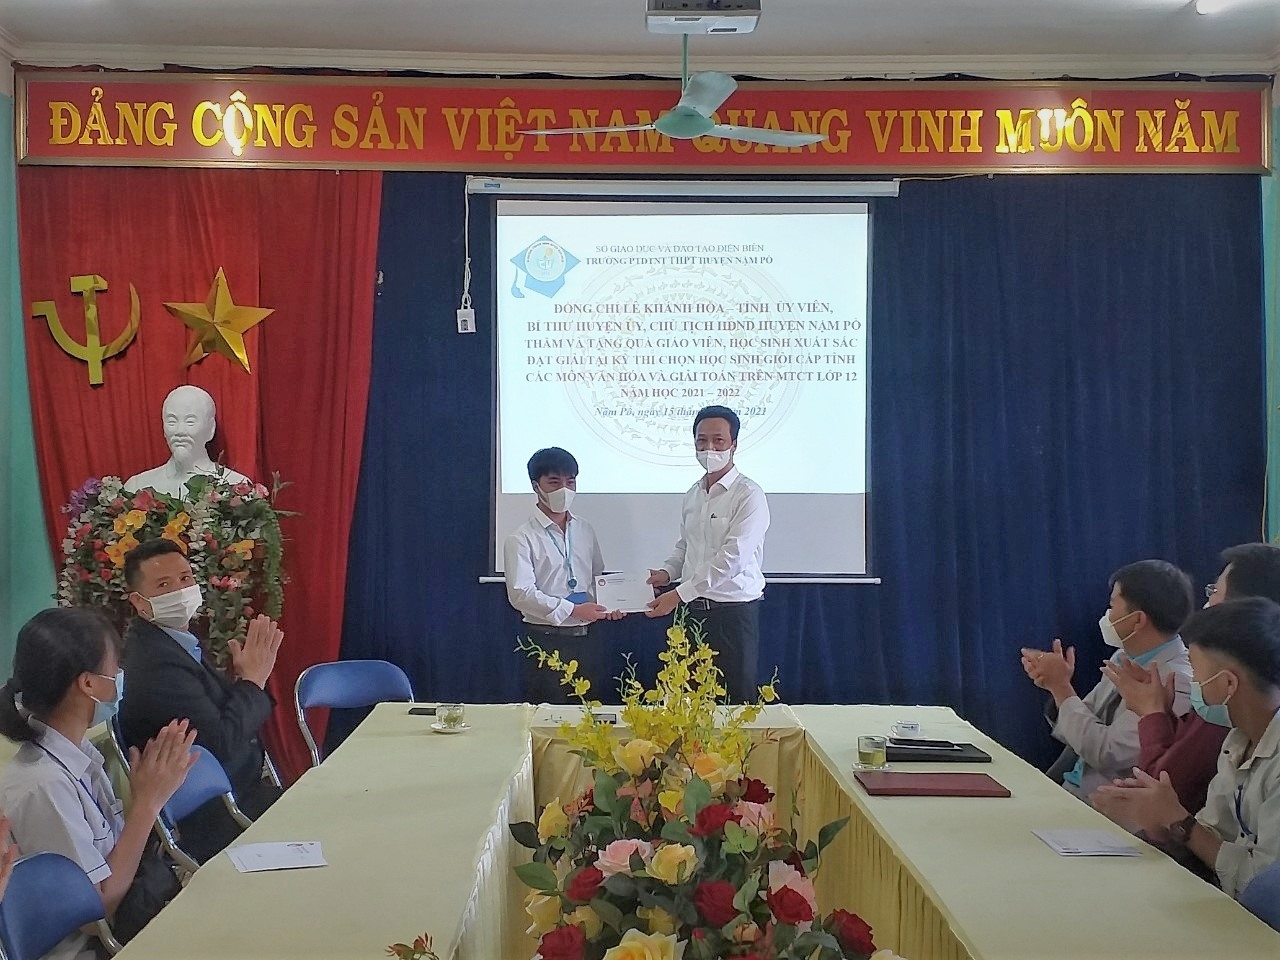 Sùng Minh Sàng nhận phần thưởng trong lễ tuyên dương học sinh giỏi do lãnh đạo huyện Nậm Pồ trao tặng